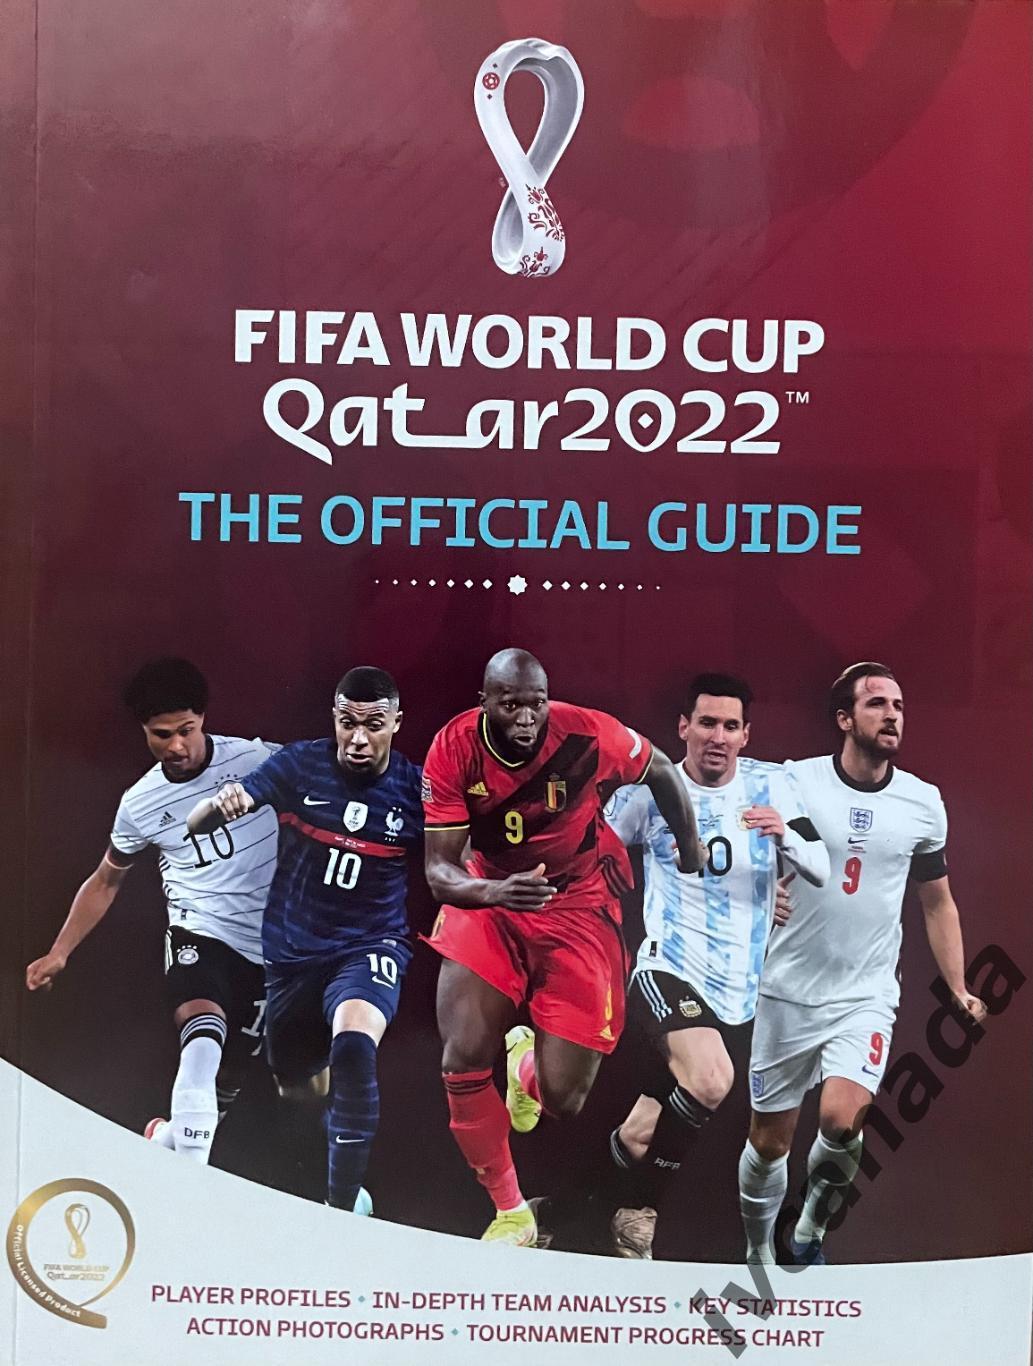 Чемпионат мира по футболу Катар 2022 “FIFA WORLD CUP QATAR 2022” 20.11. - 18.12.